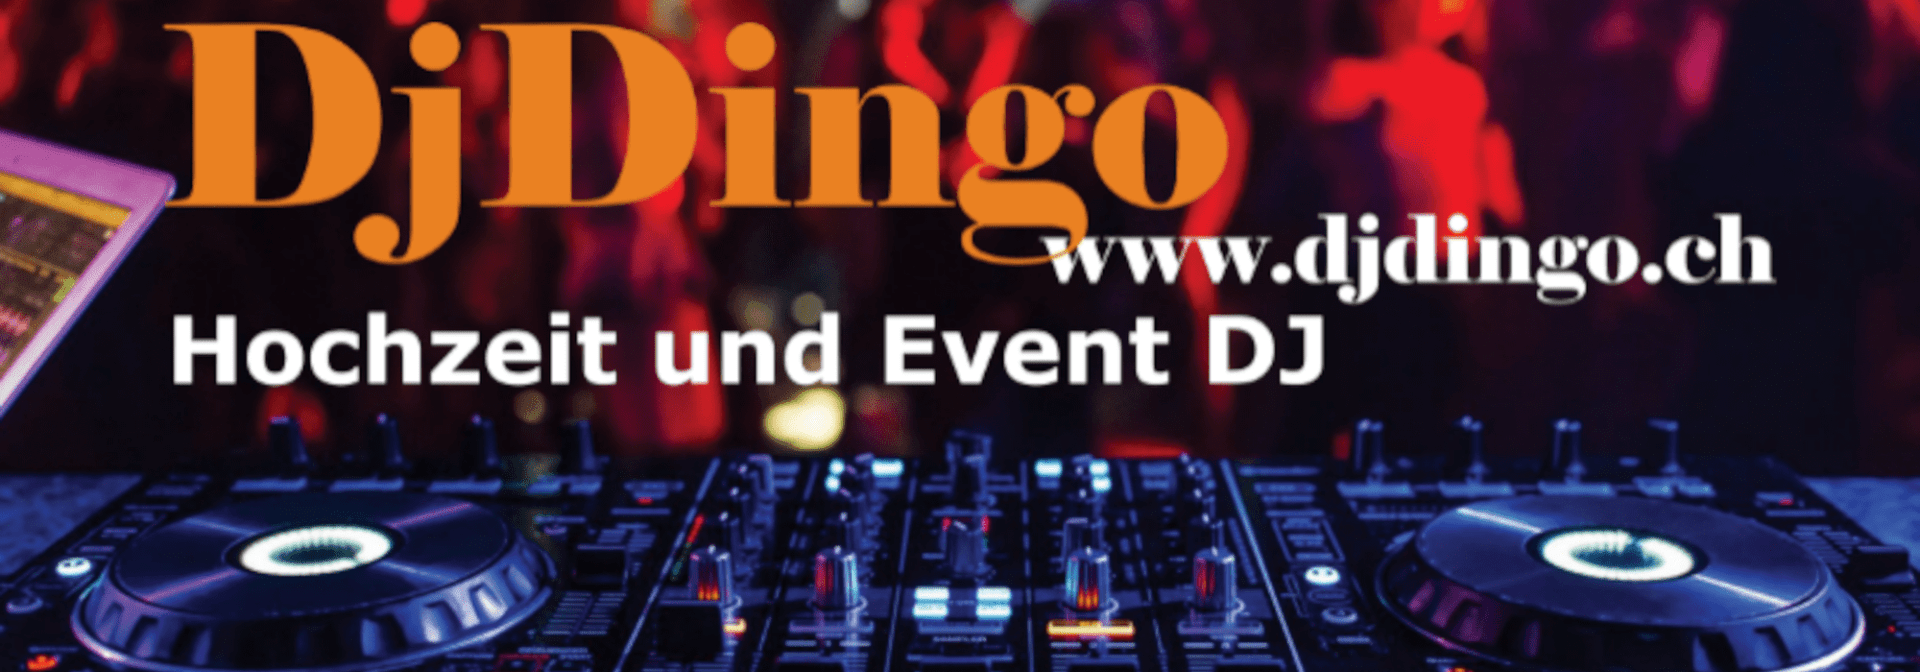 Dj Dingo Website Banner